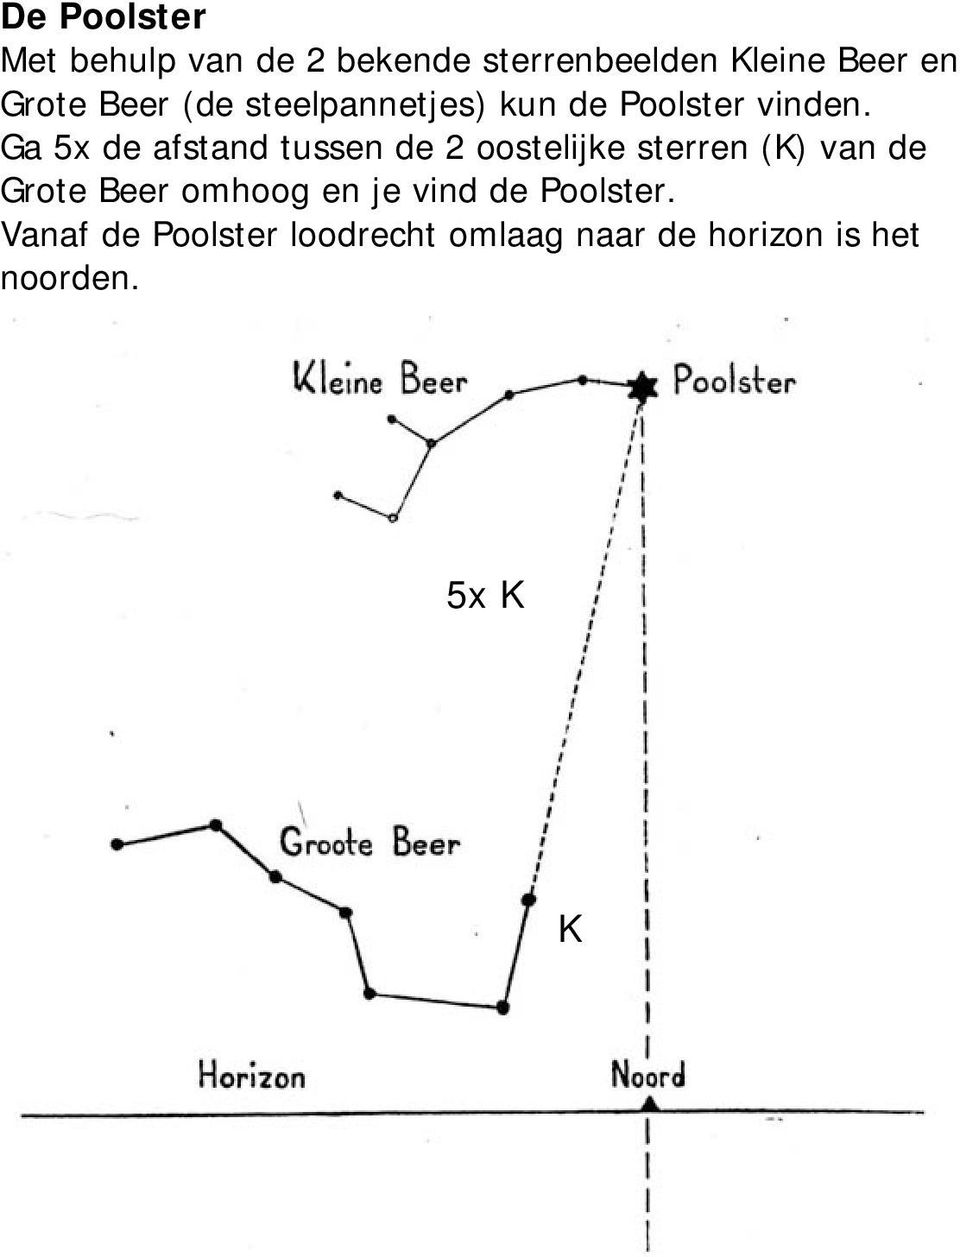 Ga 5x de afstand tussen de 2 oostelijke sterren (K) van de Grote Beer